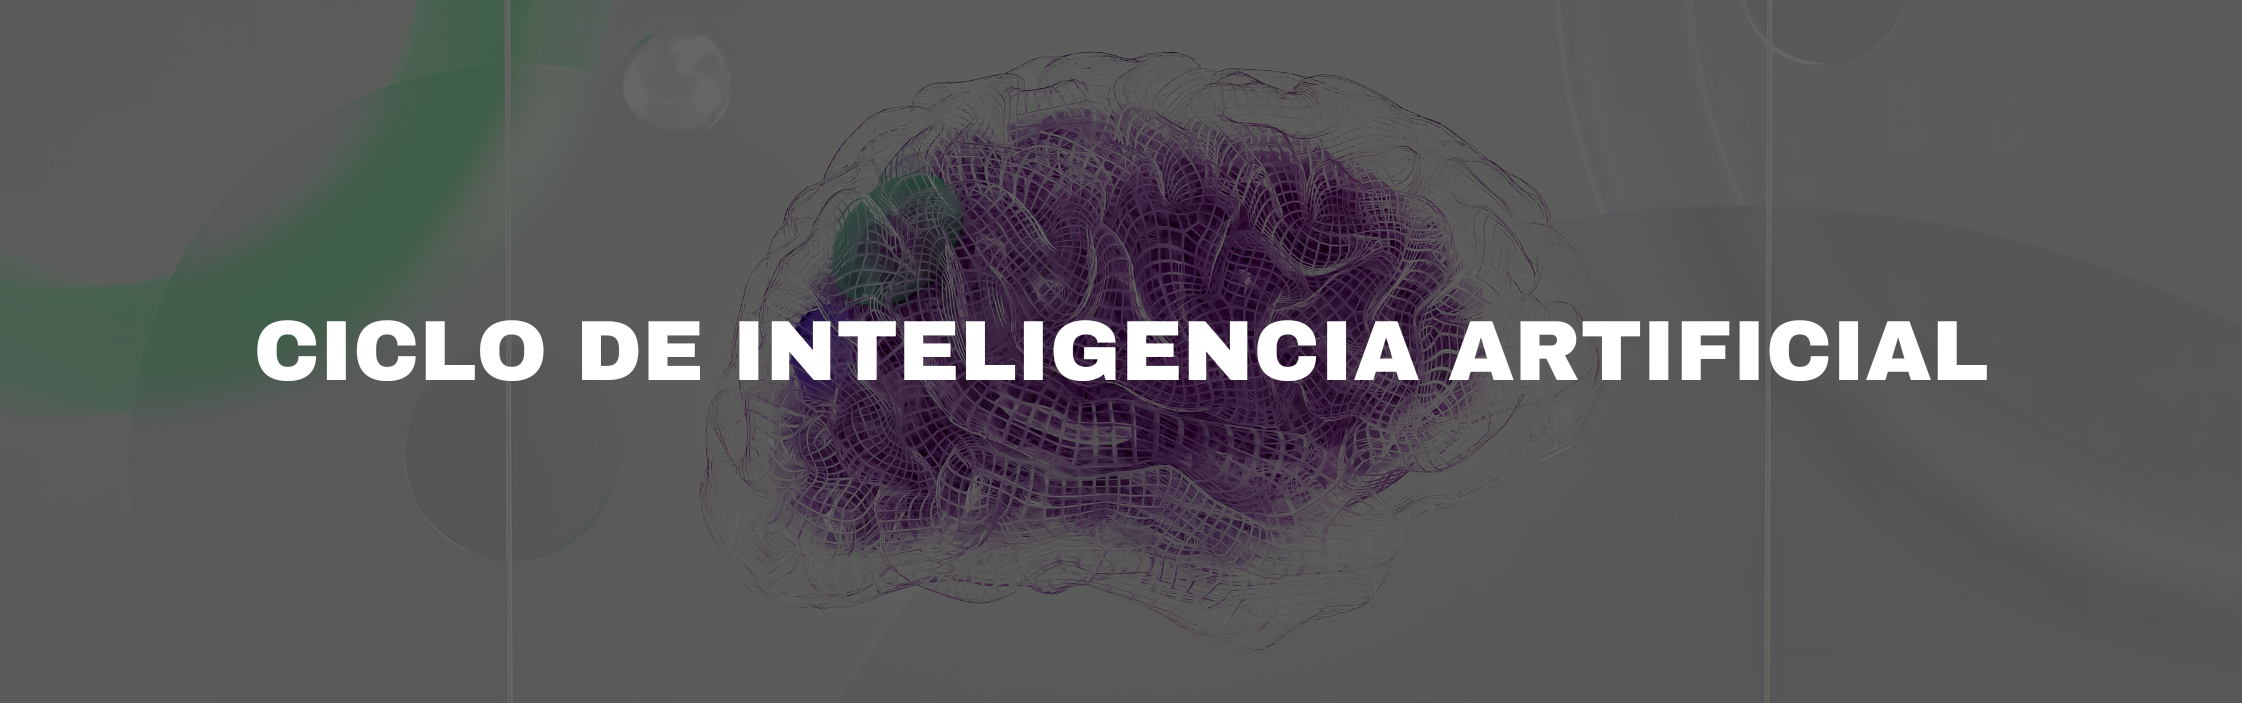 Banner de Ciclo de Inteligencia Artificial, Machine Learning y Analítica